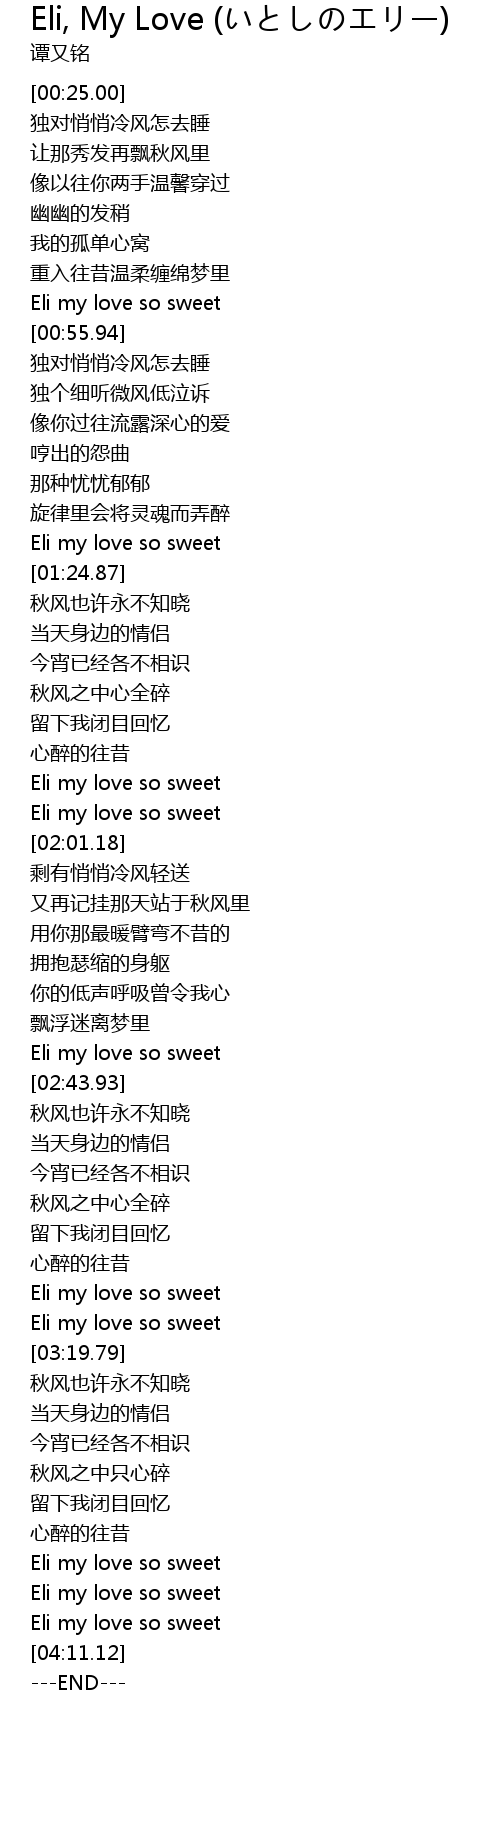 Eli My Love いとしのエリー Eli My Love Lyrics Follow Lyrics